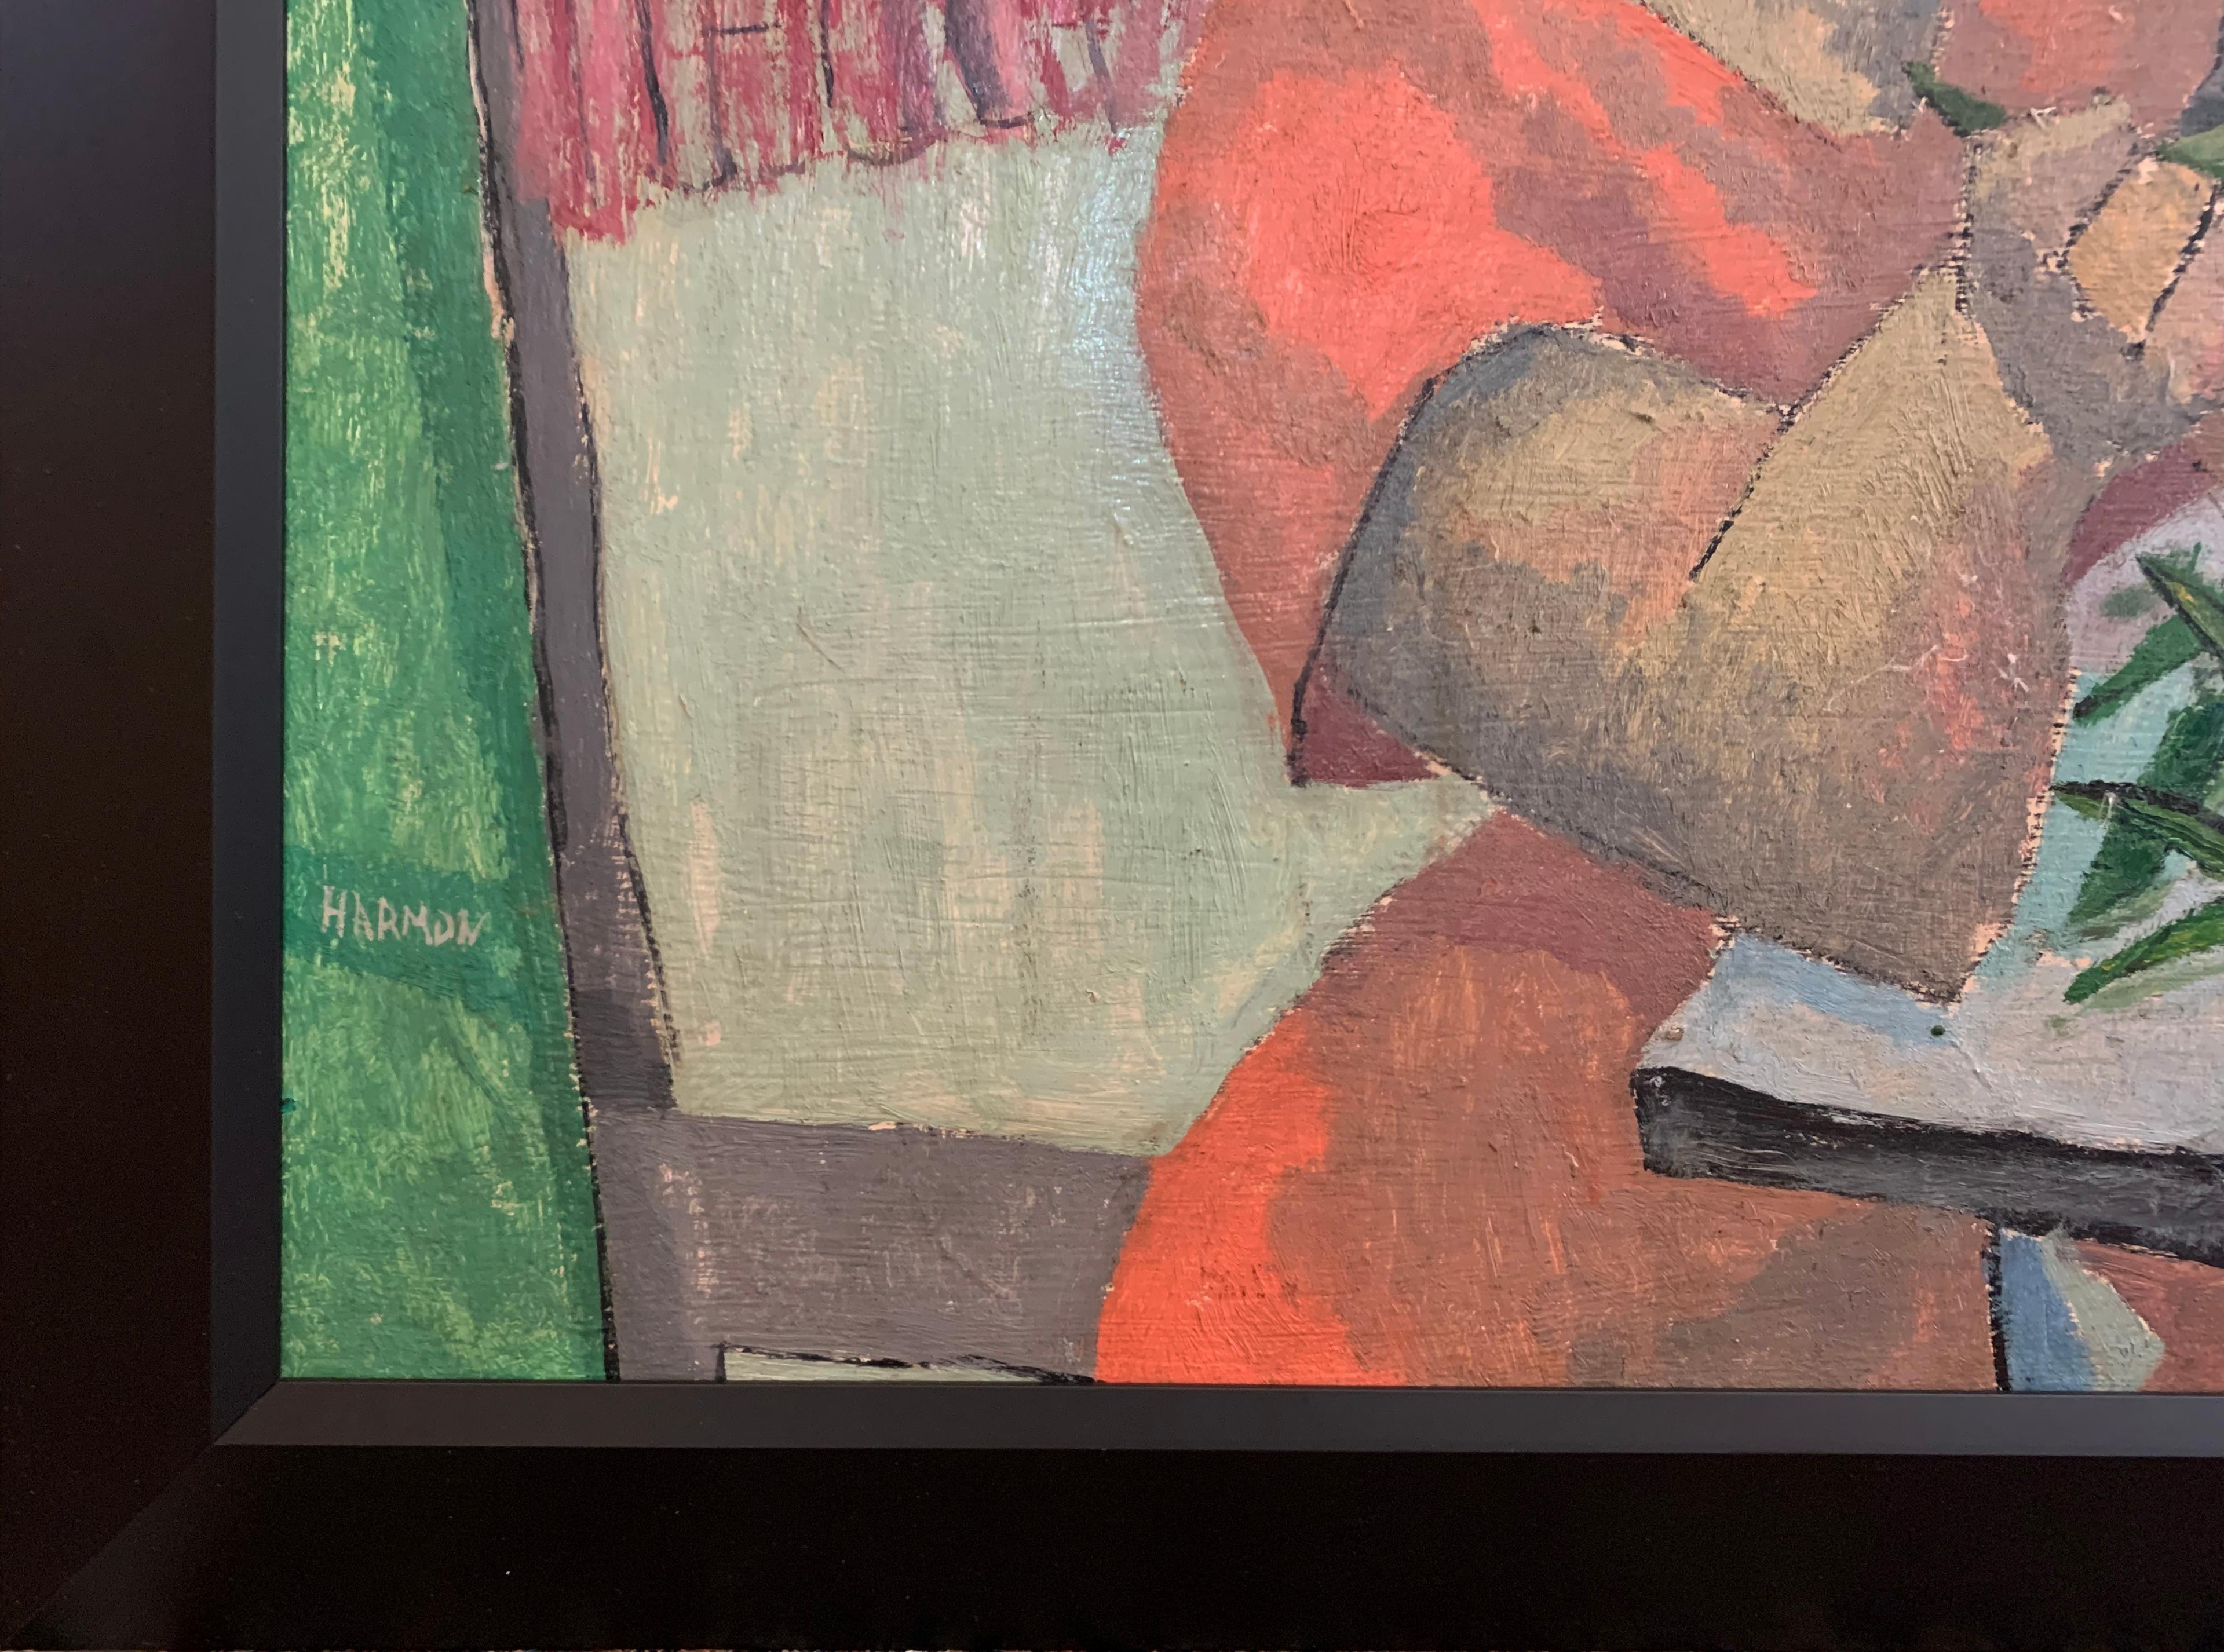 Zuckererbsen, Expressionist  Porträt einer jungen Frau von Künstlerin aus Philadelphia (Expressionismus), Painting, von Bernard Harmon